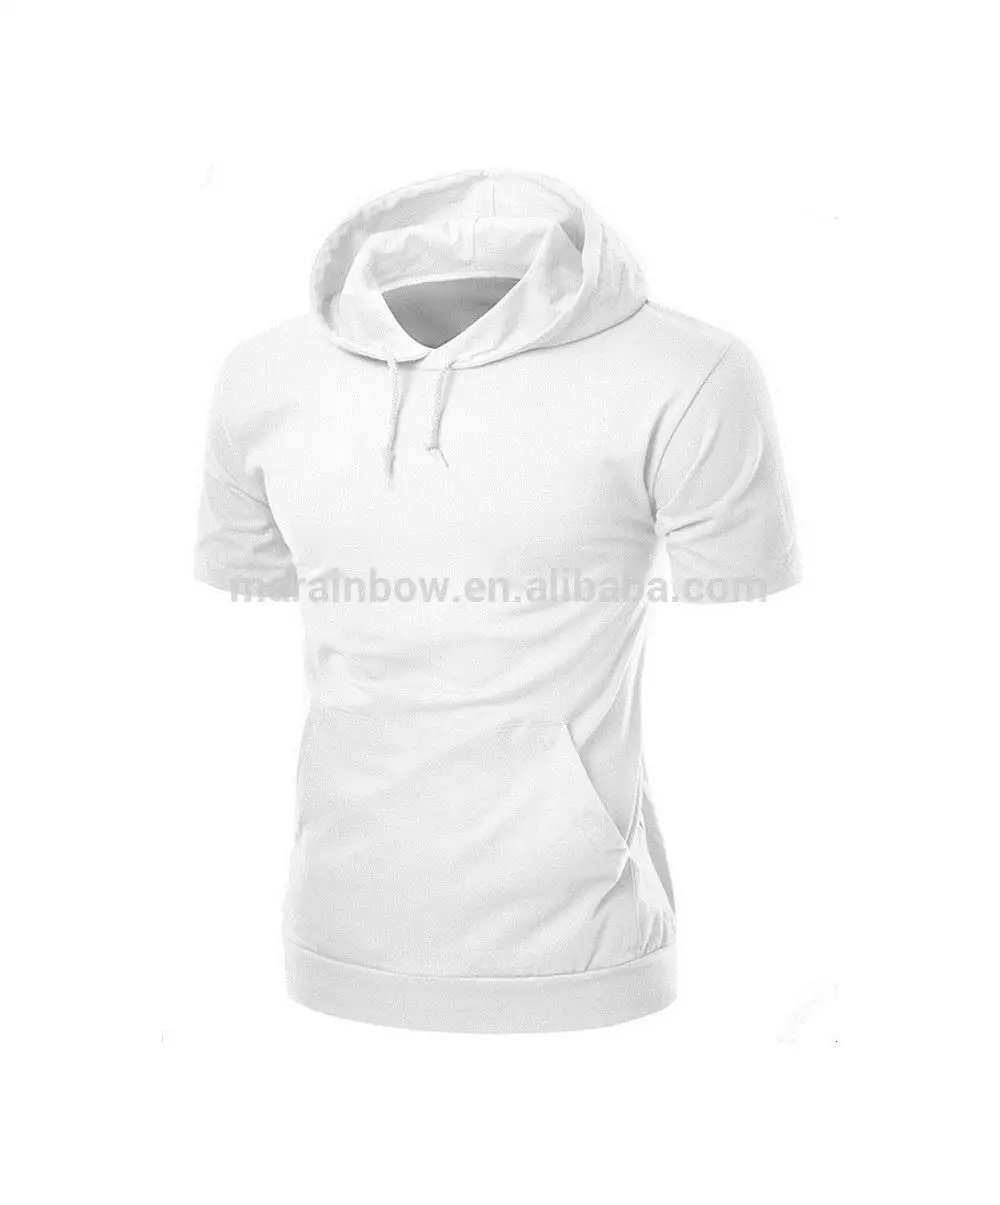 white shirt hoodie